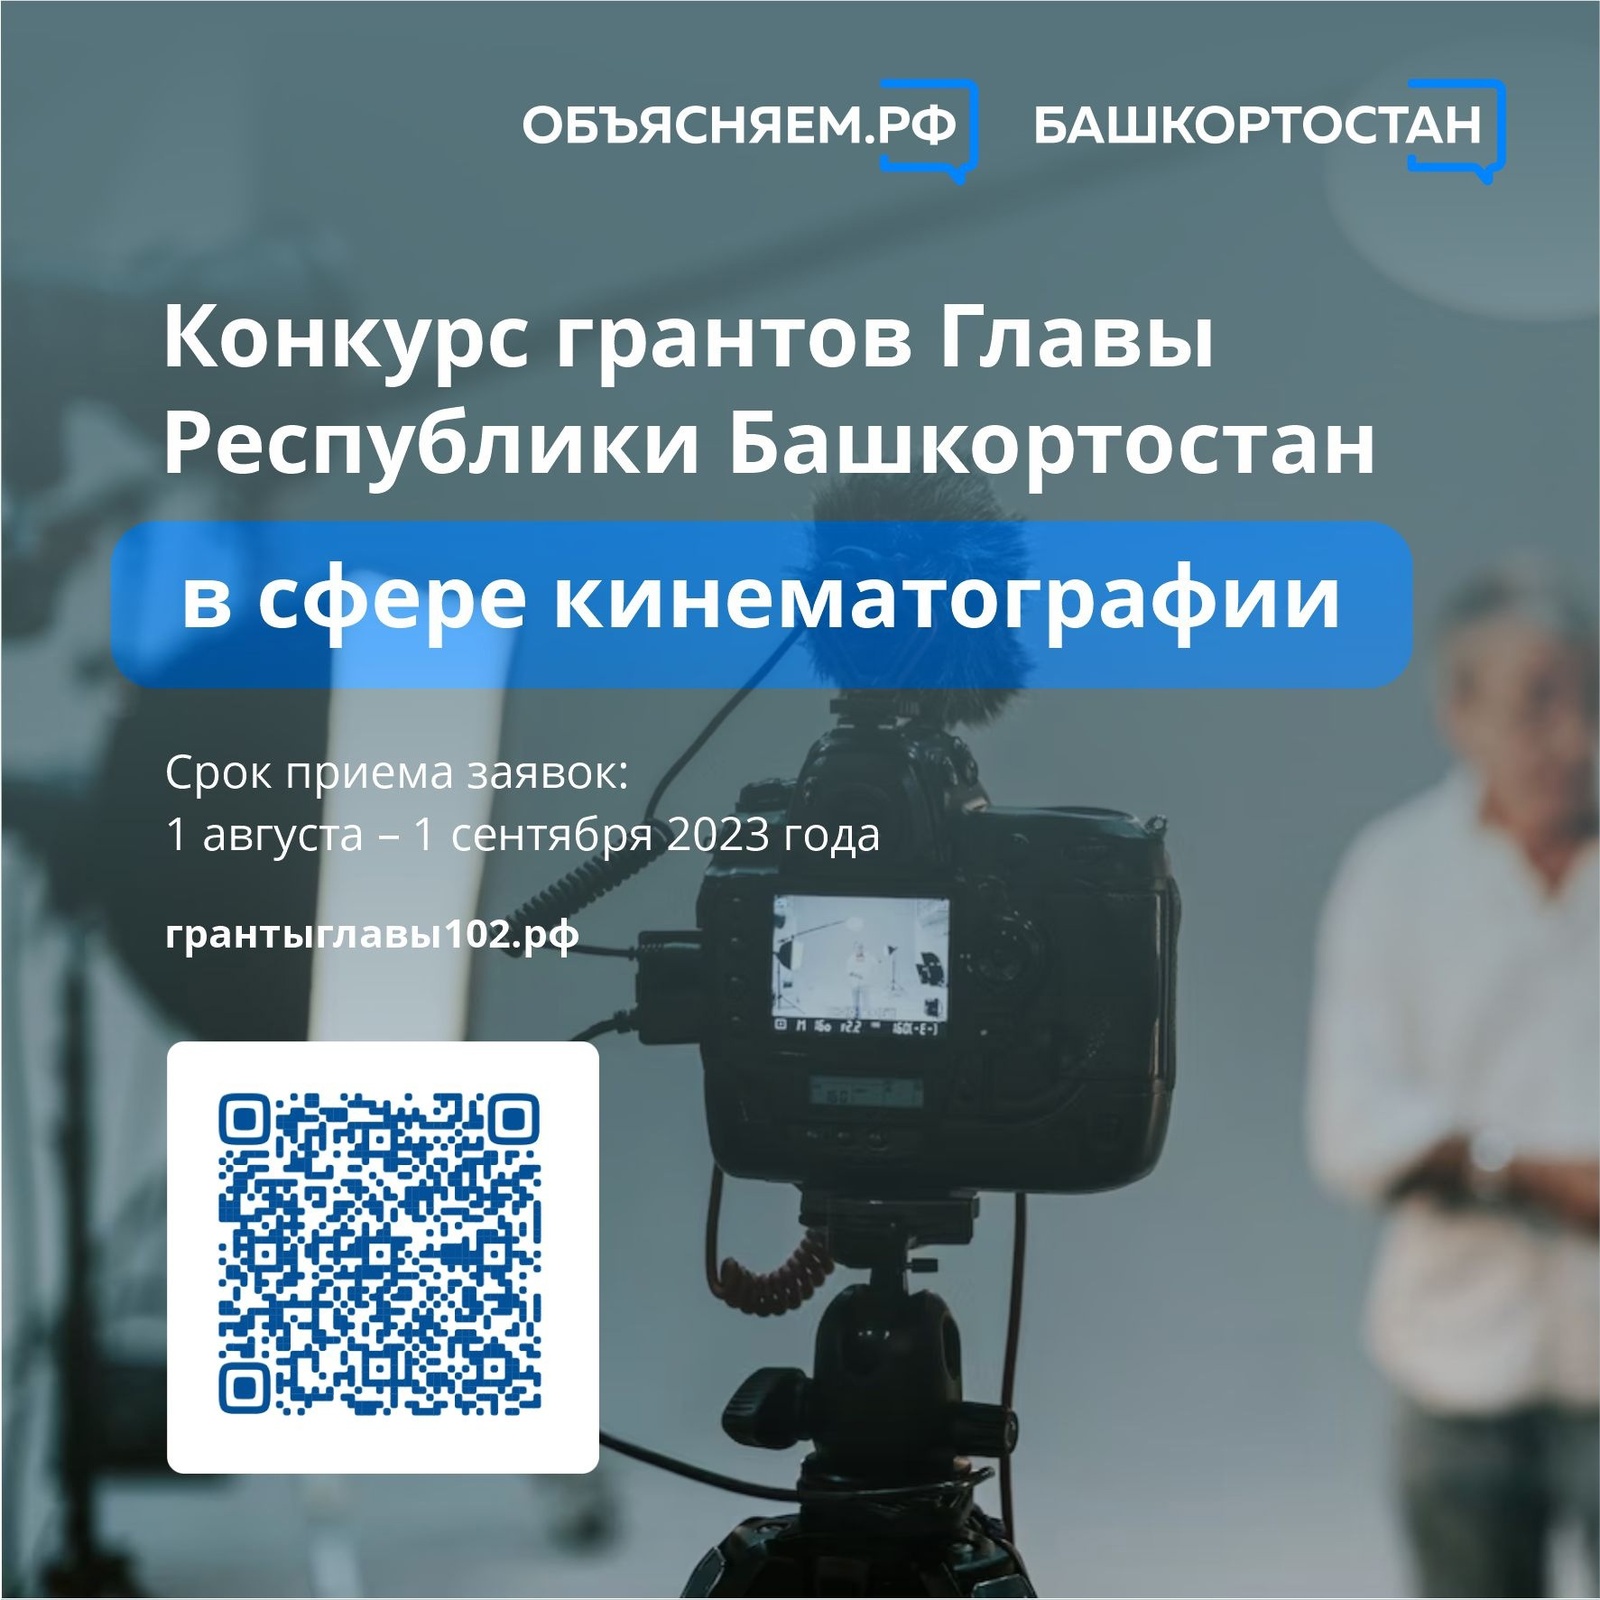 В поддержку проектов в сфере кинематографии в Башкортостане проведут конкурс грантов Главы республики.